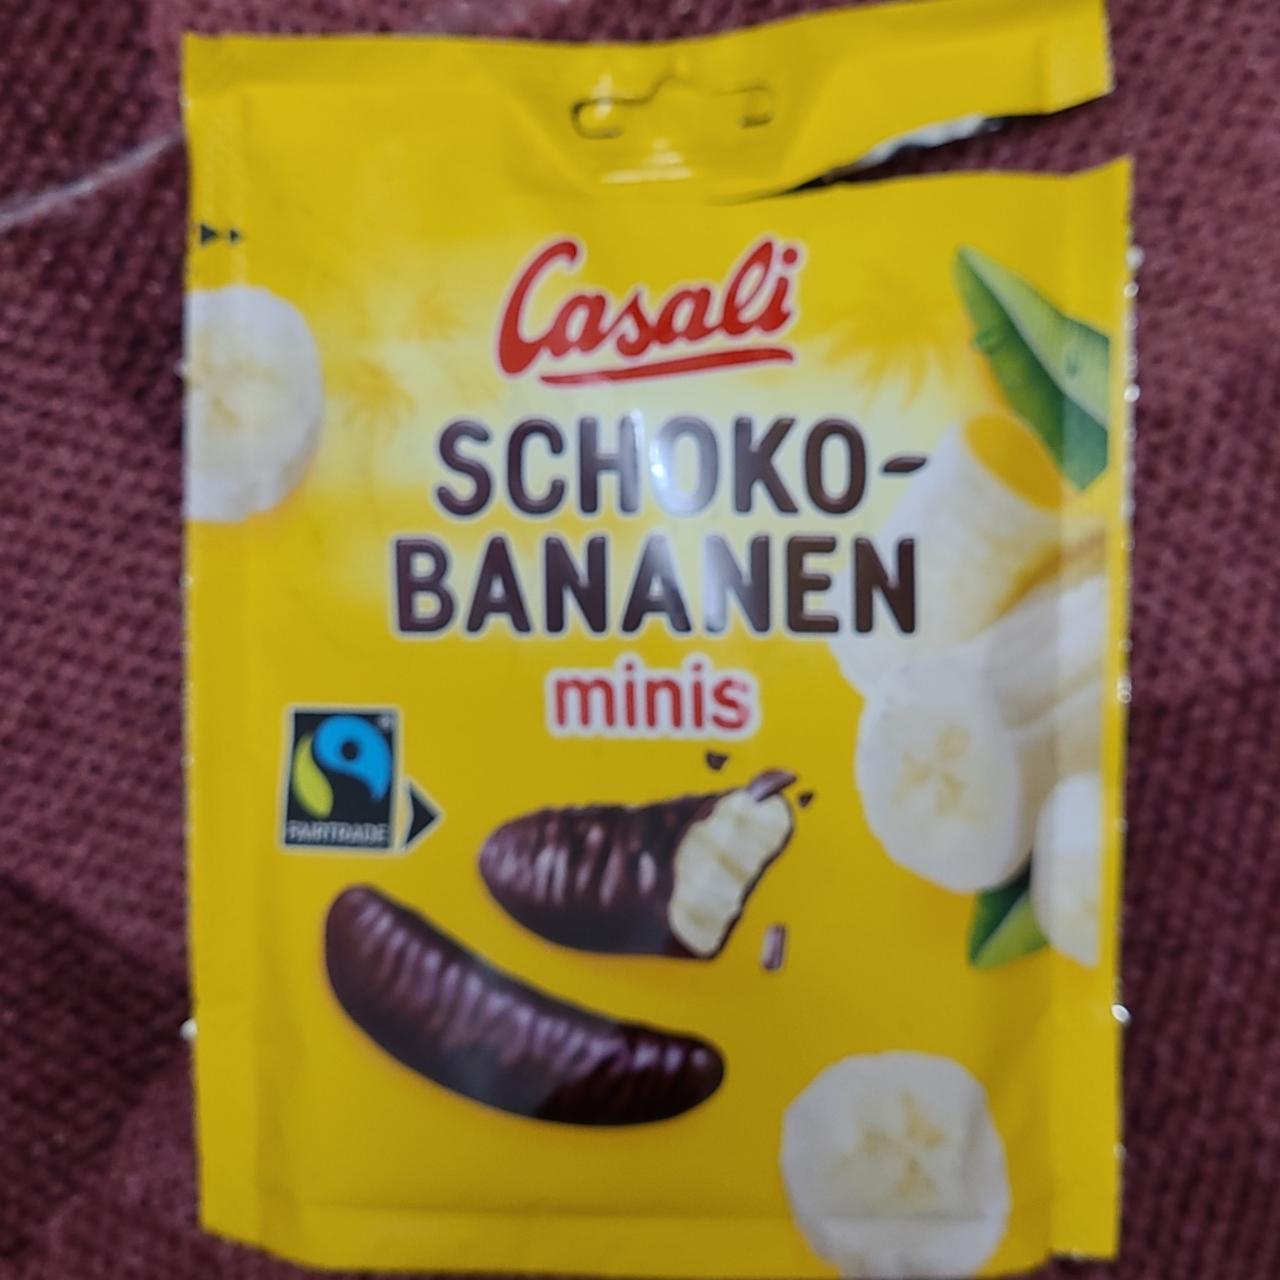 Fotografie - Schoko-bananen minis Casali